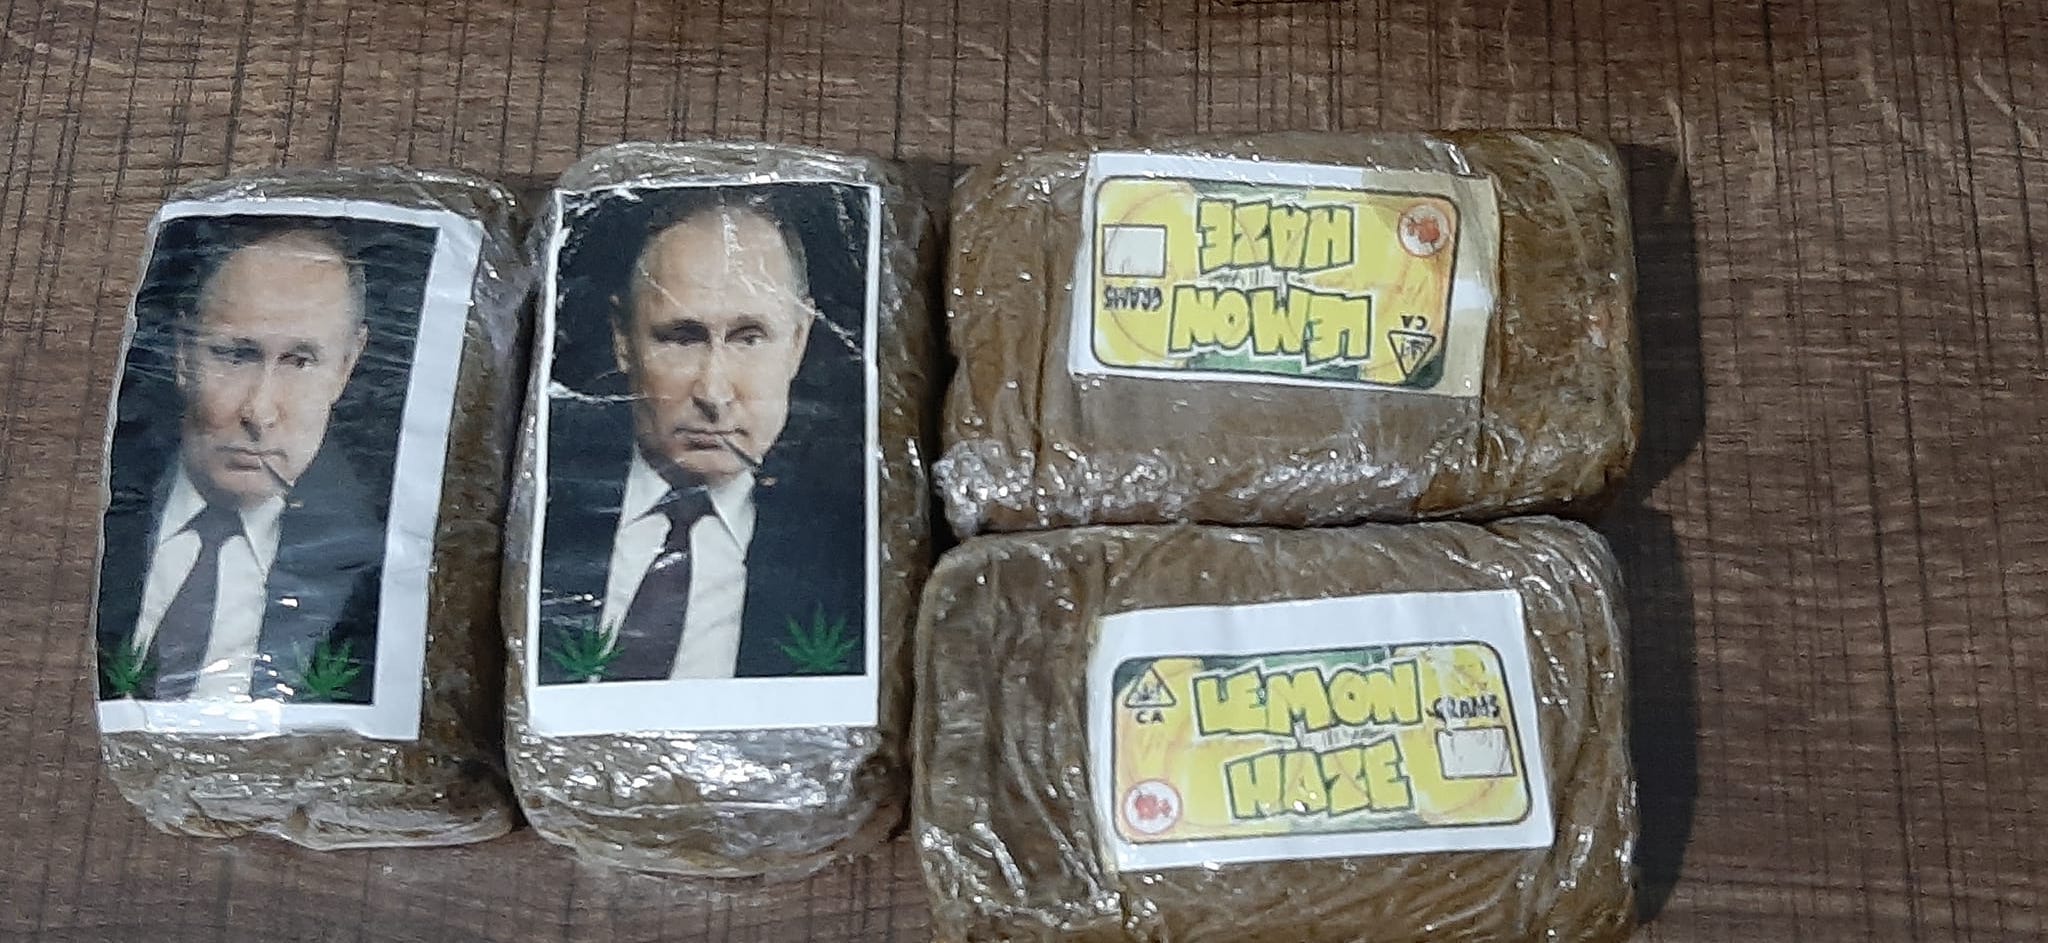 Путин про наркотики жалоба на продажу наркотиков